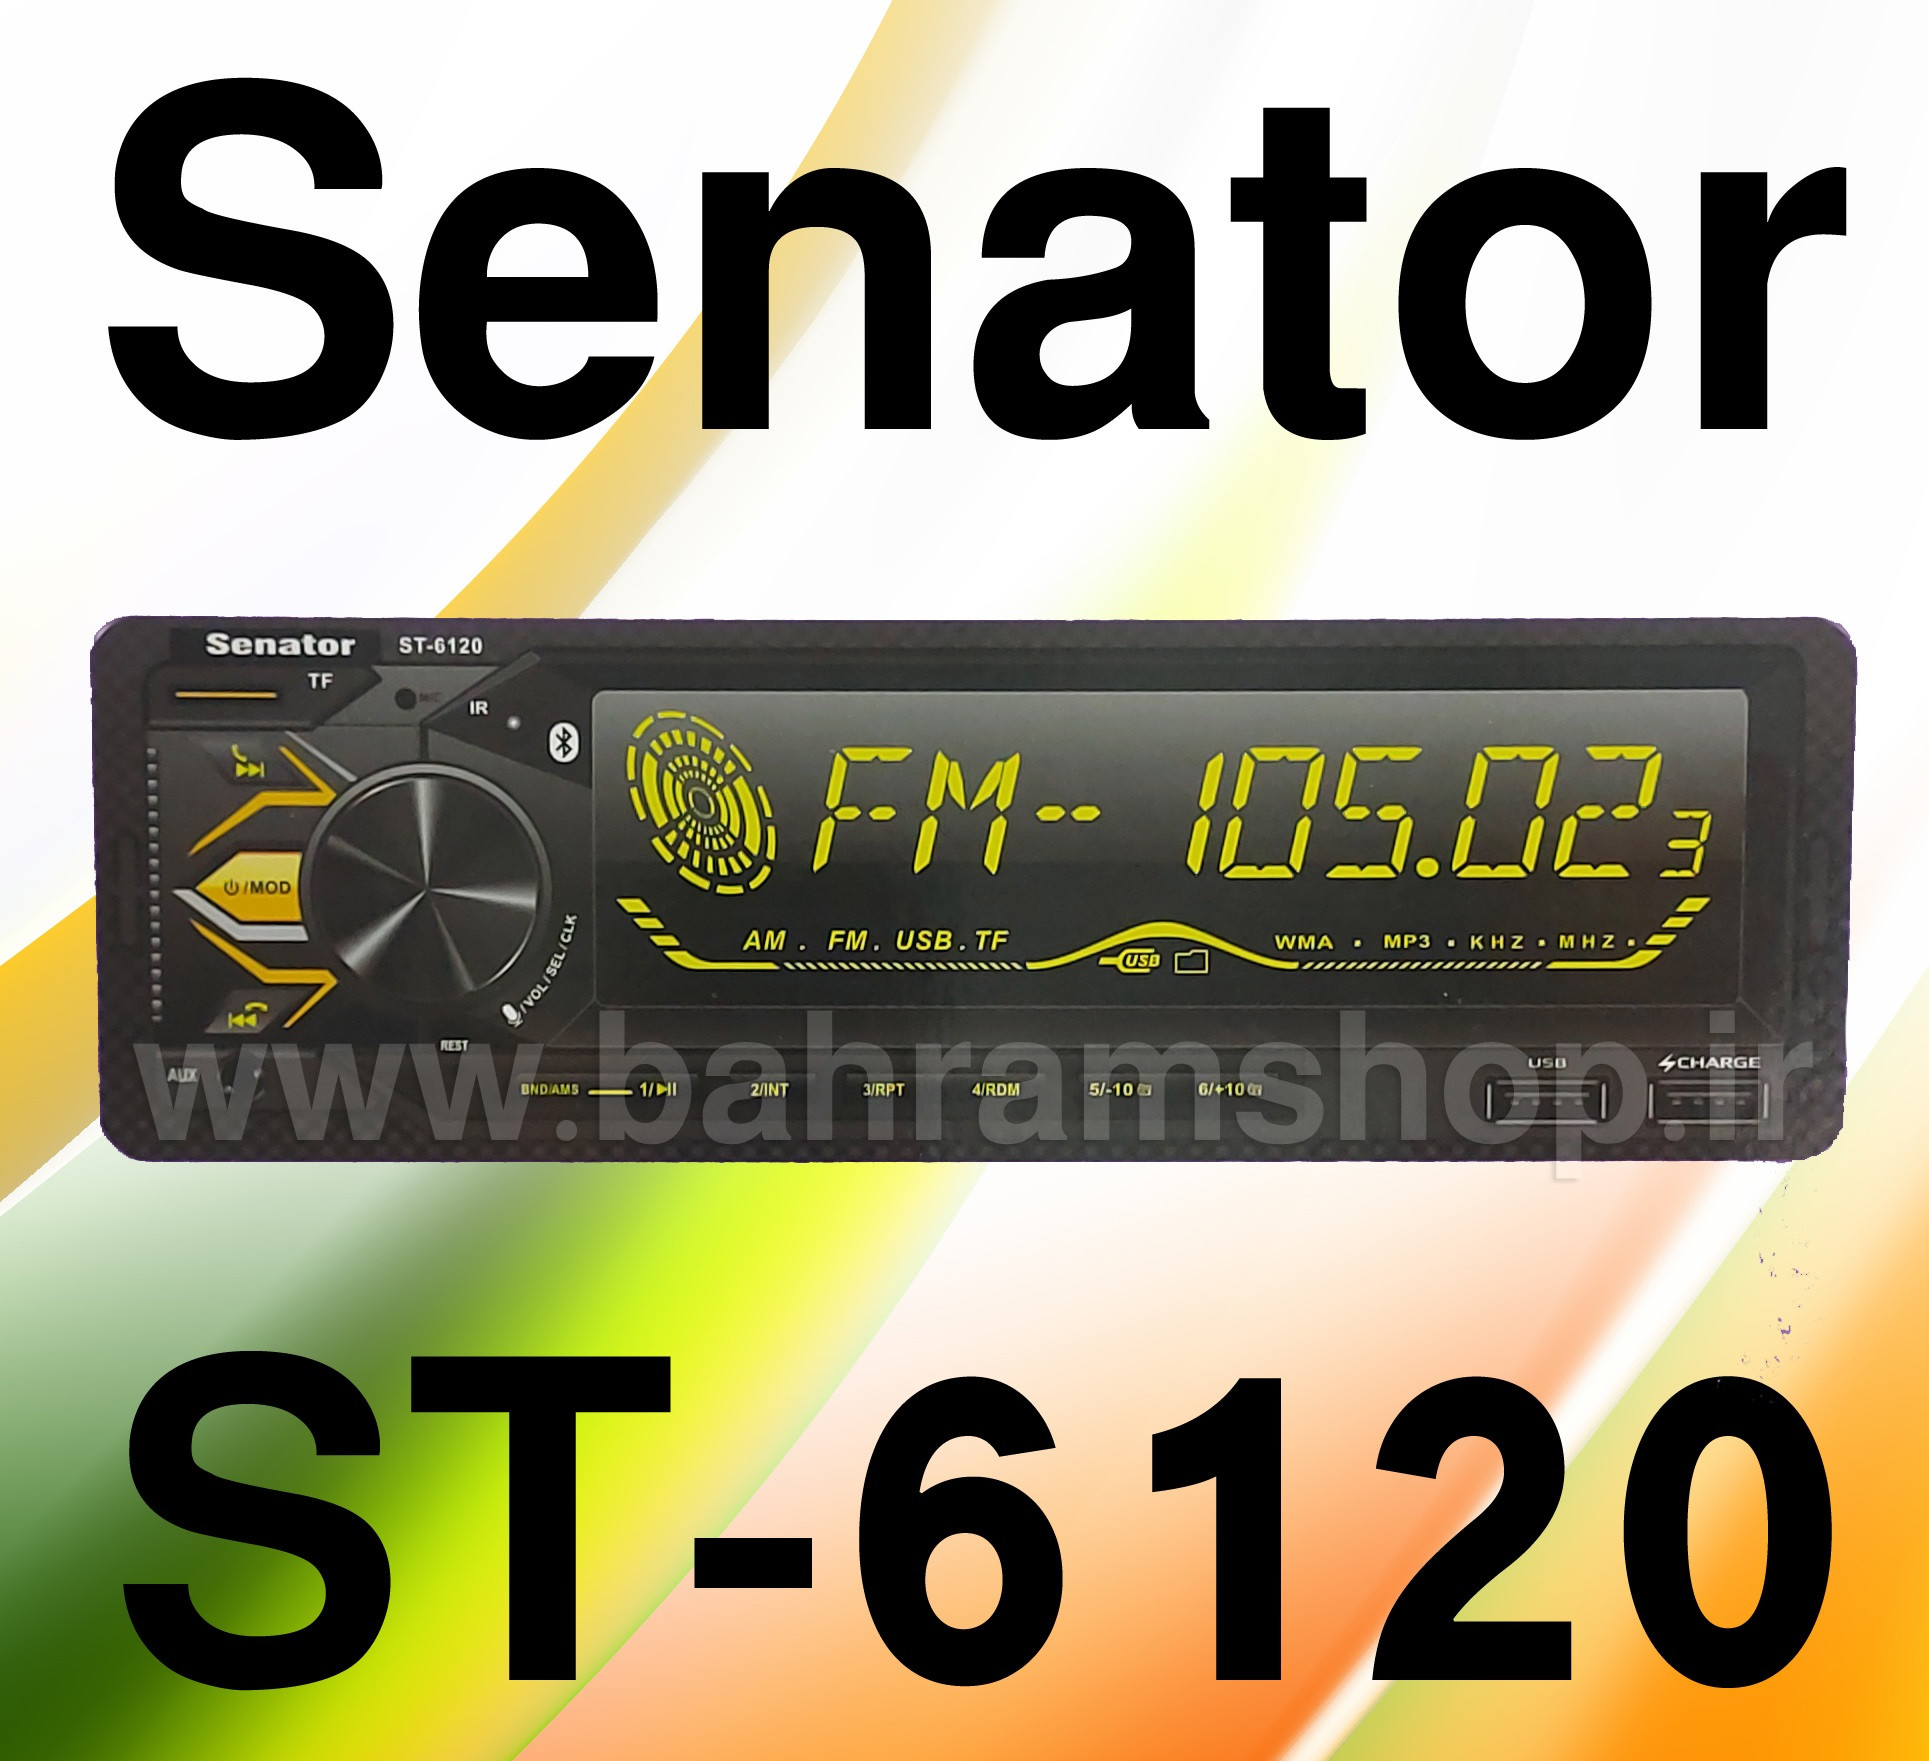 Senator ST-6120 پخش دکلس سناتور